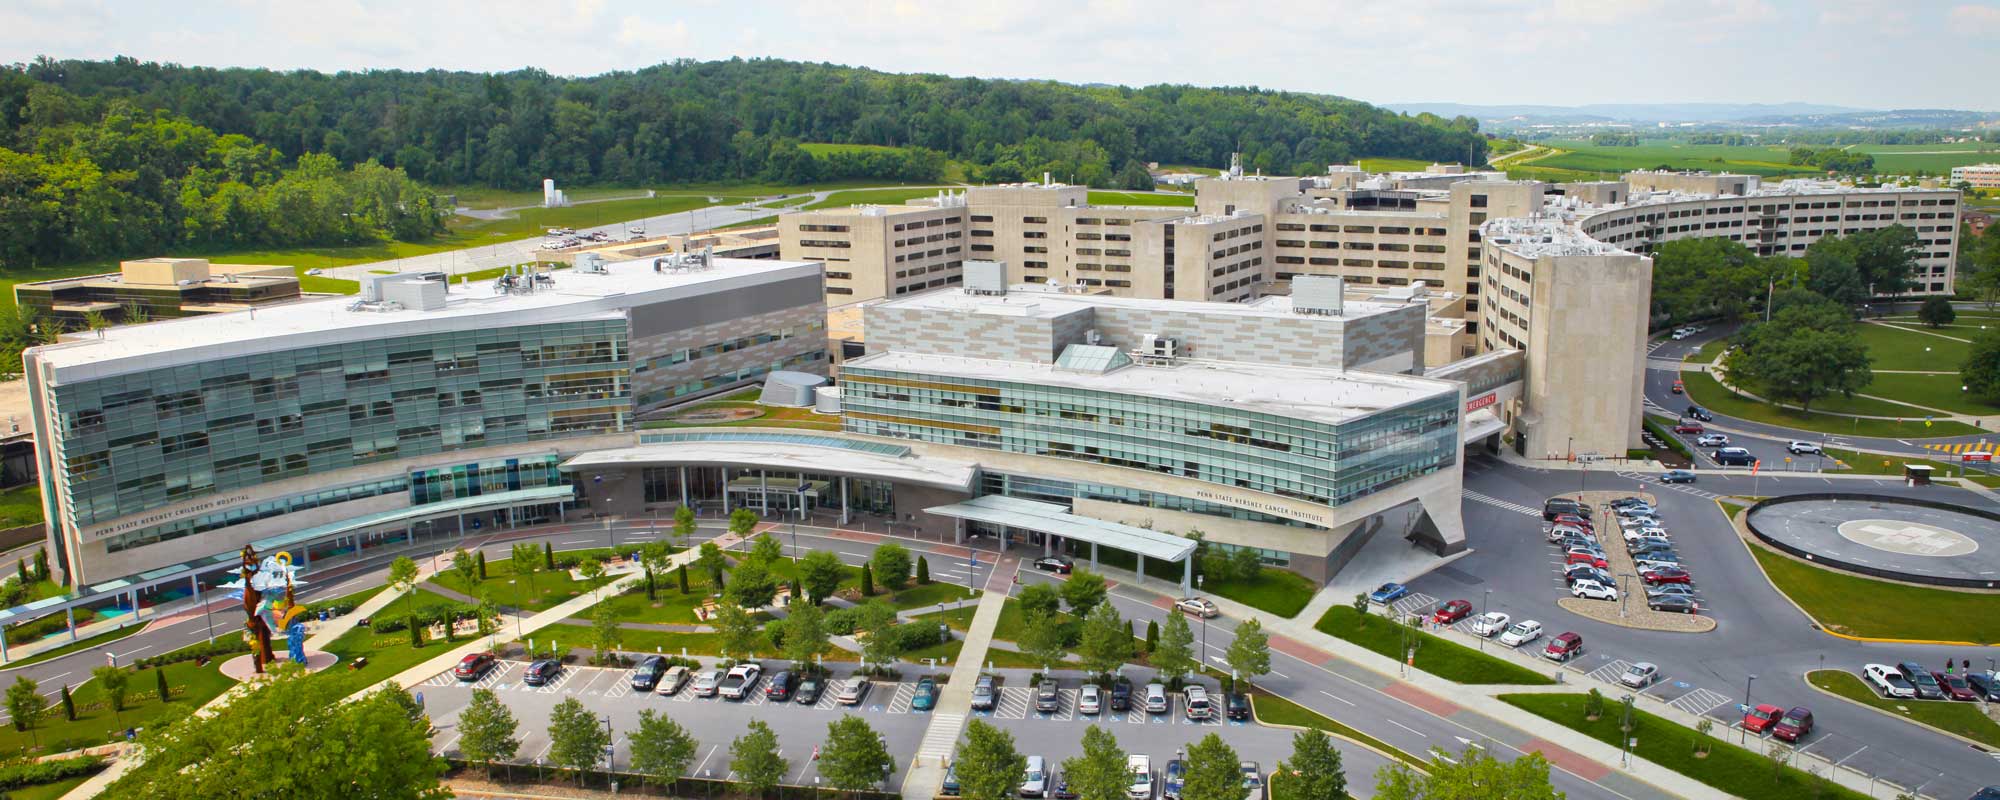 Milton S. Hershey Medical Center | Penn State Health